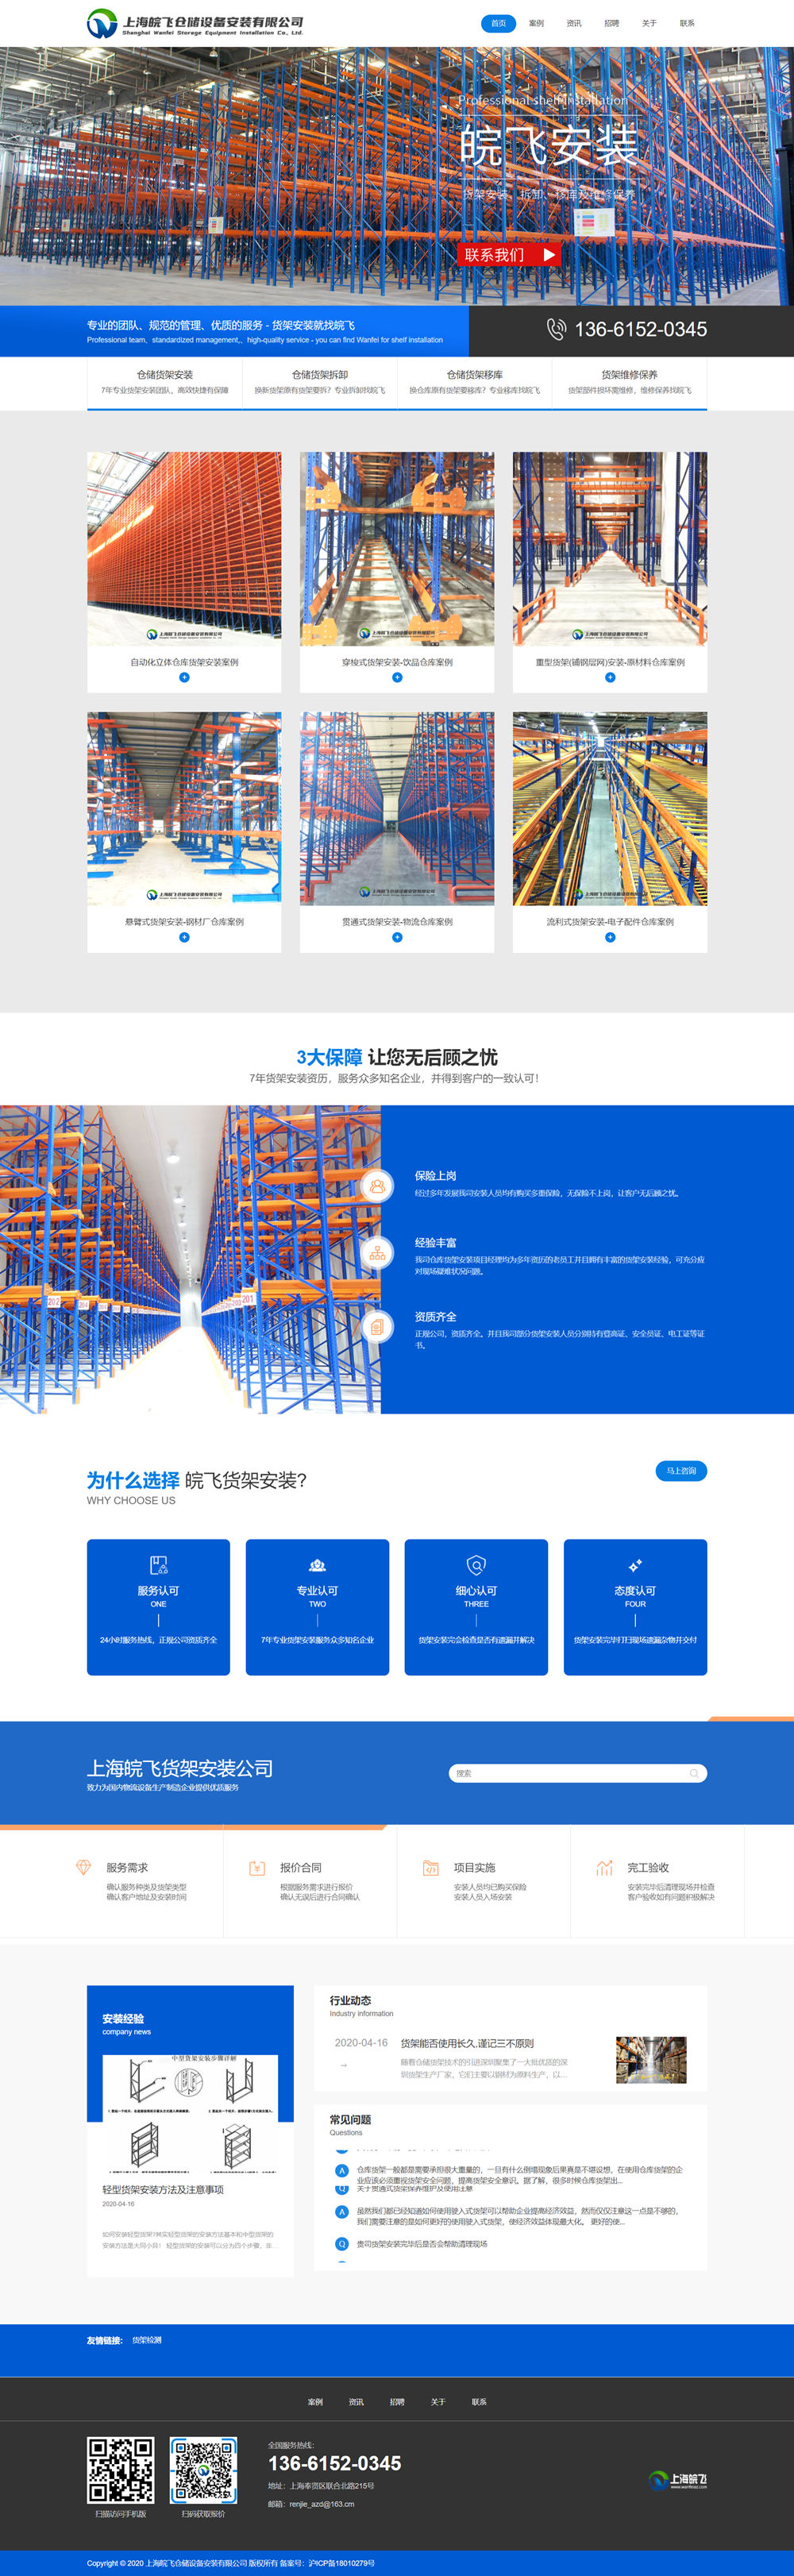 上海皖飞仓储设备安装网站建设